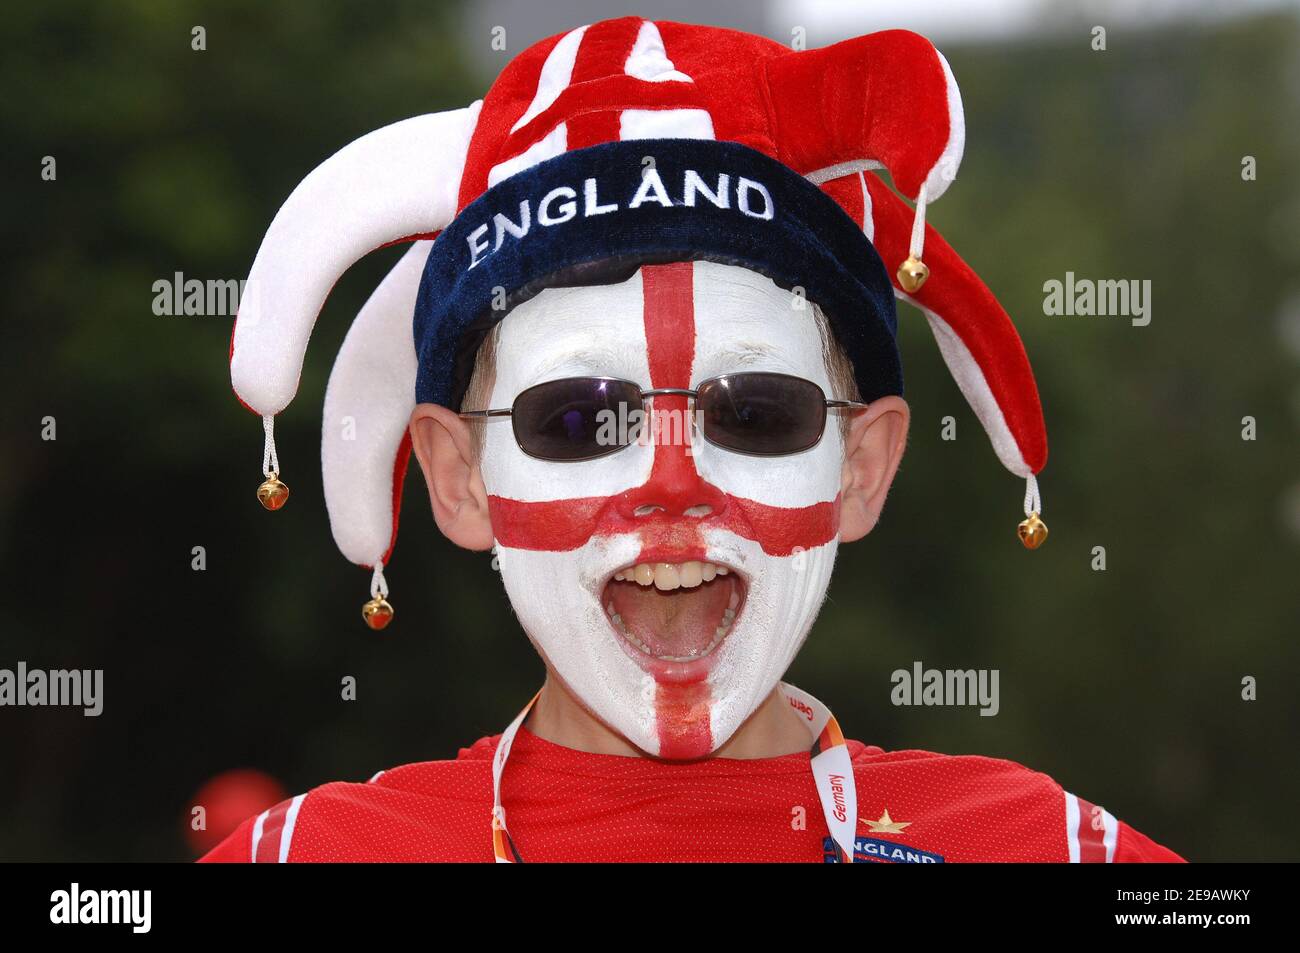 Ein Englands Fan, der vor dem Weltcup 2006, Gruppe B, England gegen Trinidad und Tobago Spiel in Nürnberg, Deutschland am 15. Juni 2006 abgebildet wurde. Foto von Gouhier-Hahn-Orban/Cameleon/ABACAPRESS.COM Stockfoto